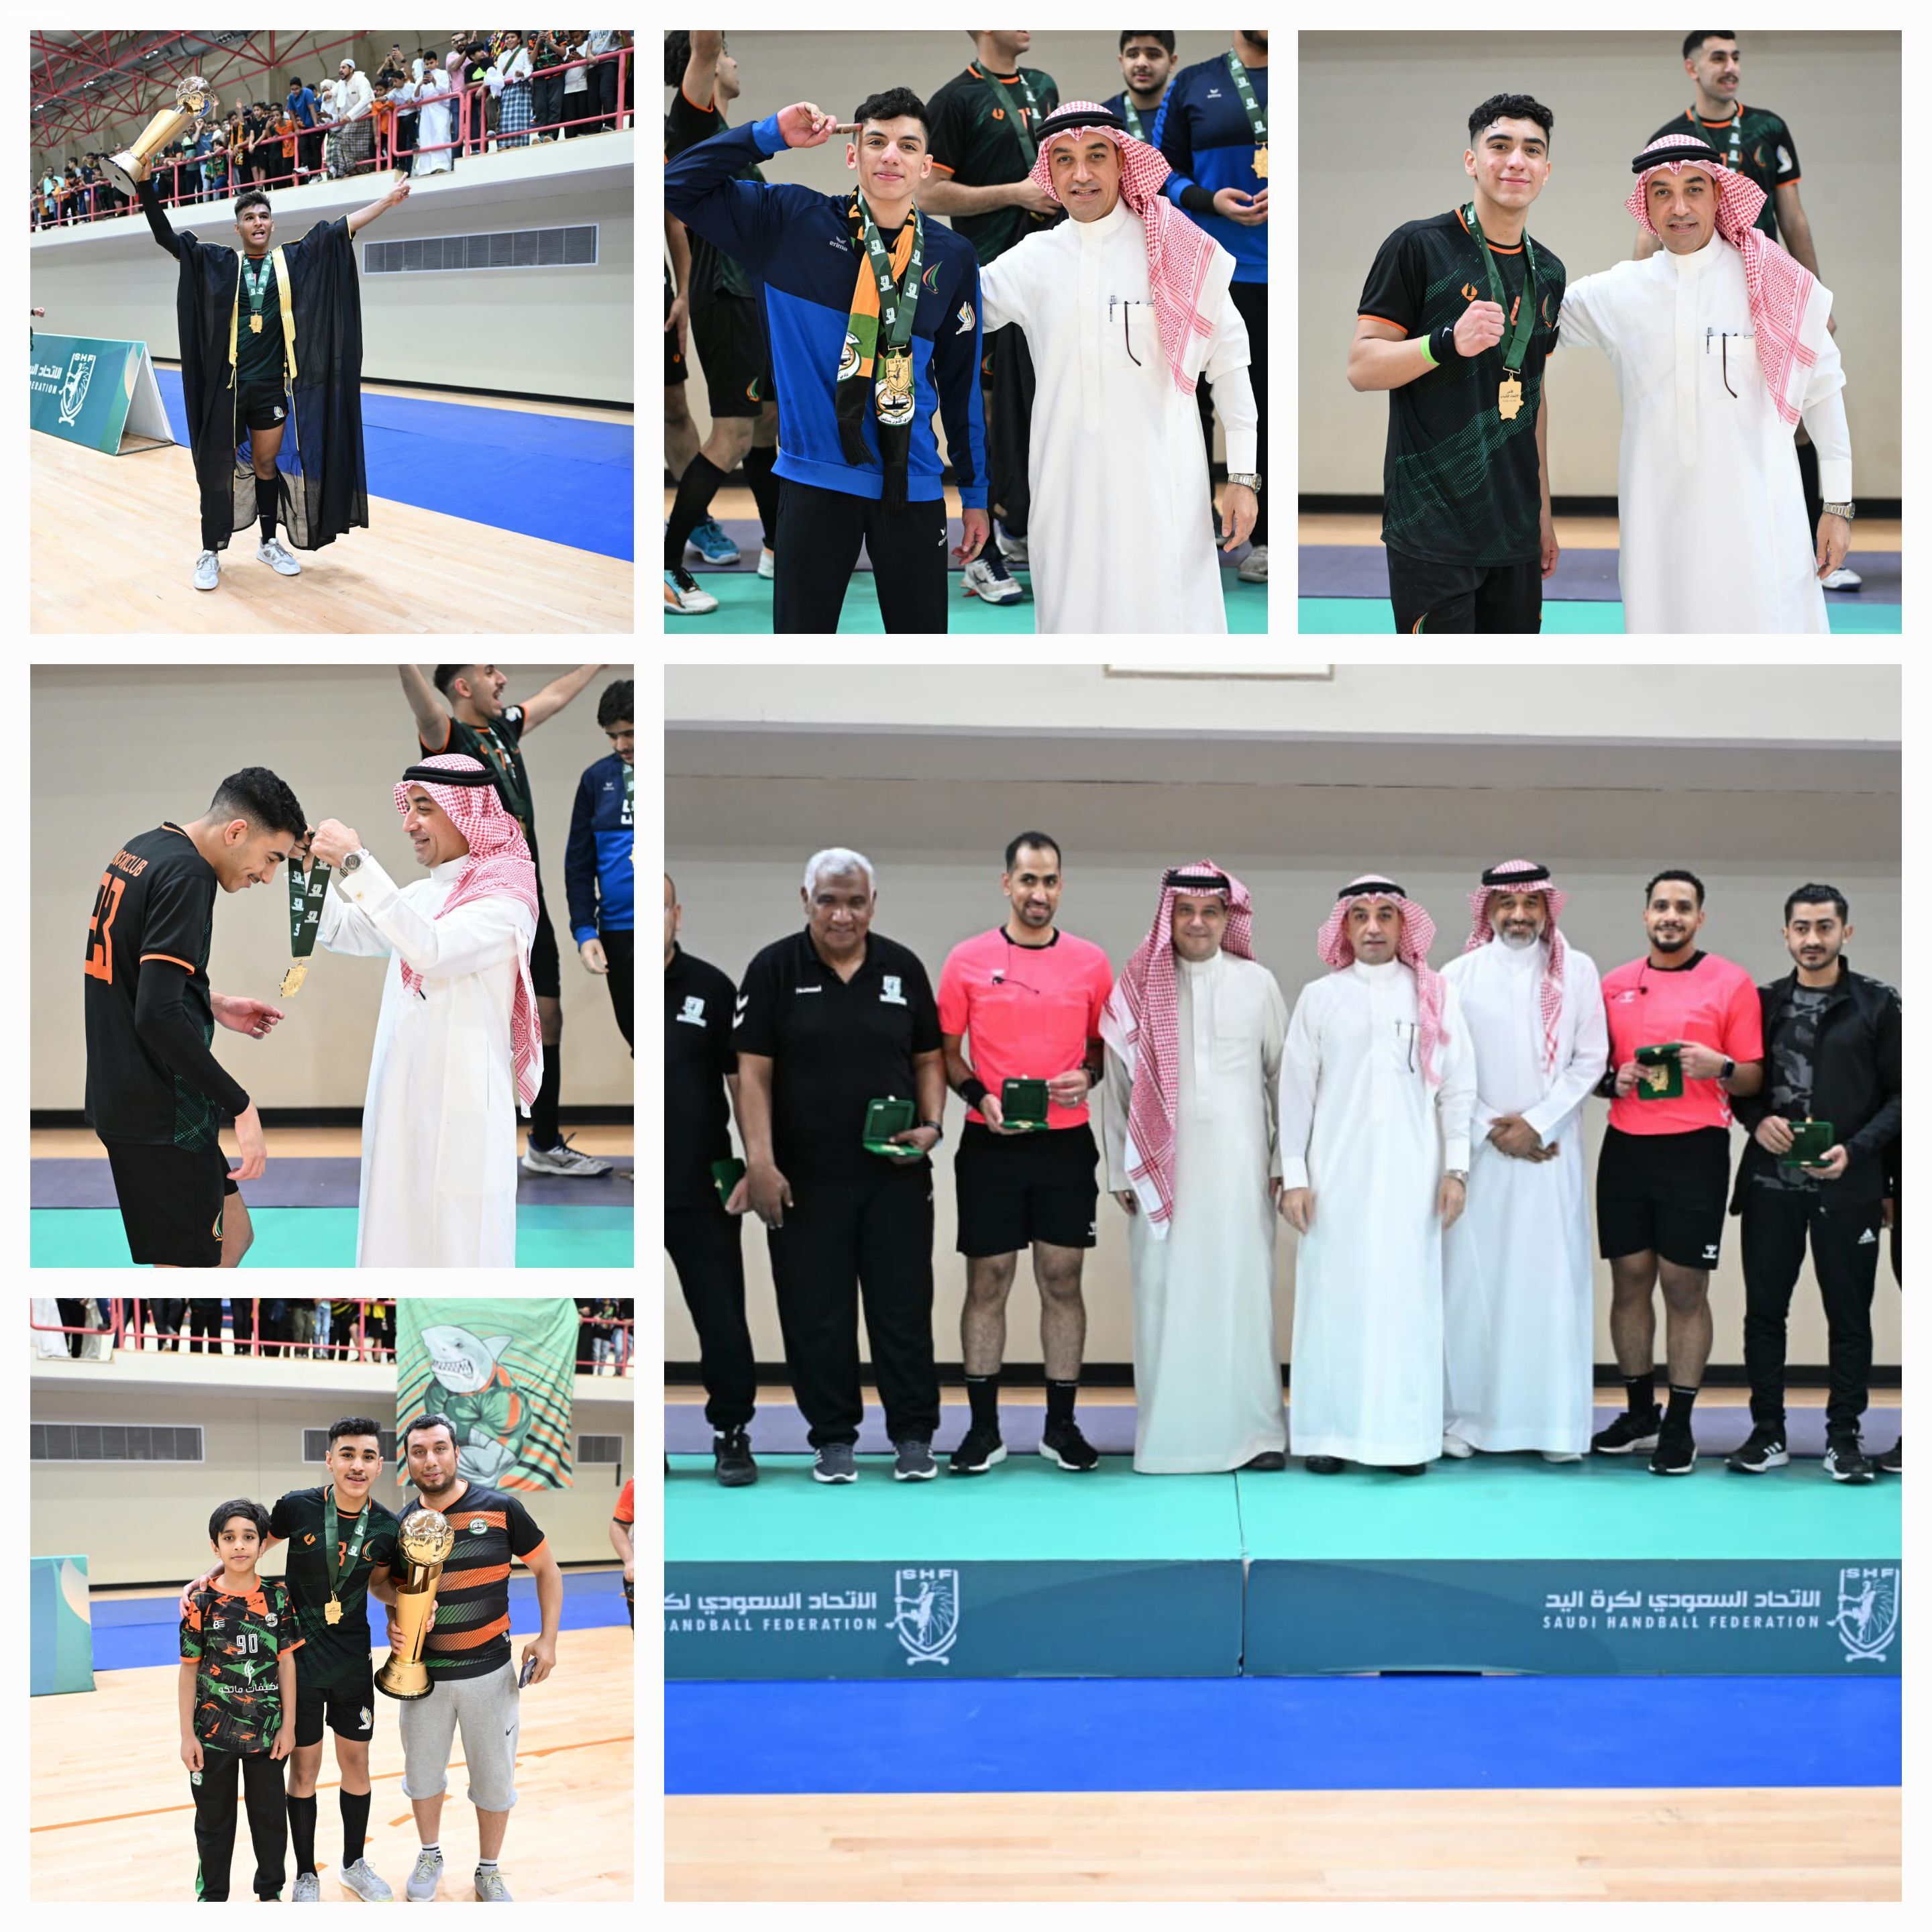 النور بطلًا لكأس الاتحاد السعودي لكرة اليد للشباب في نسخته الأولى